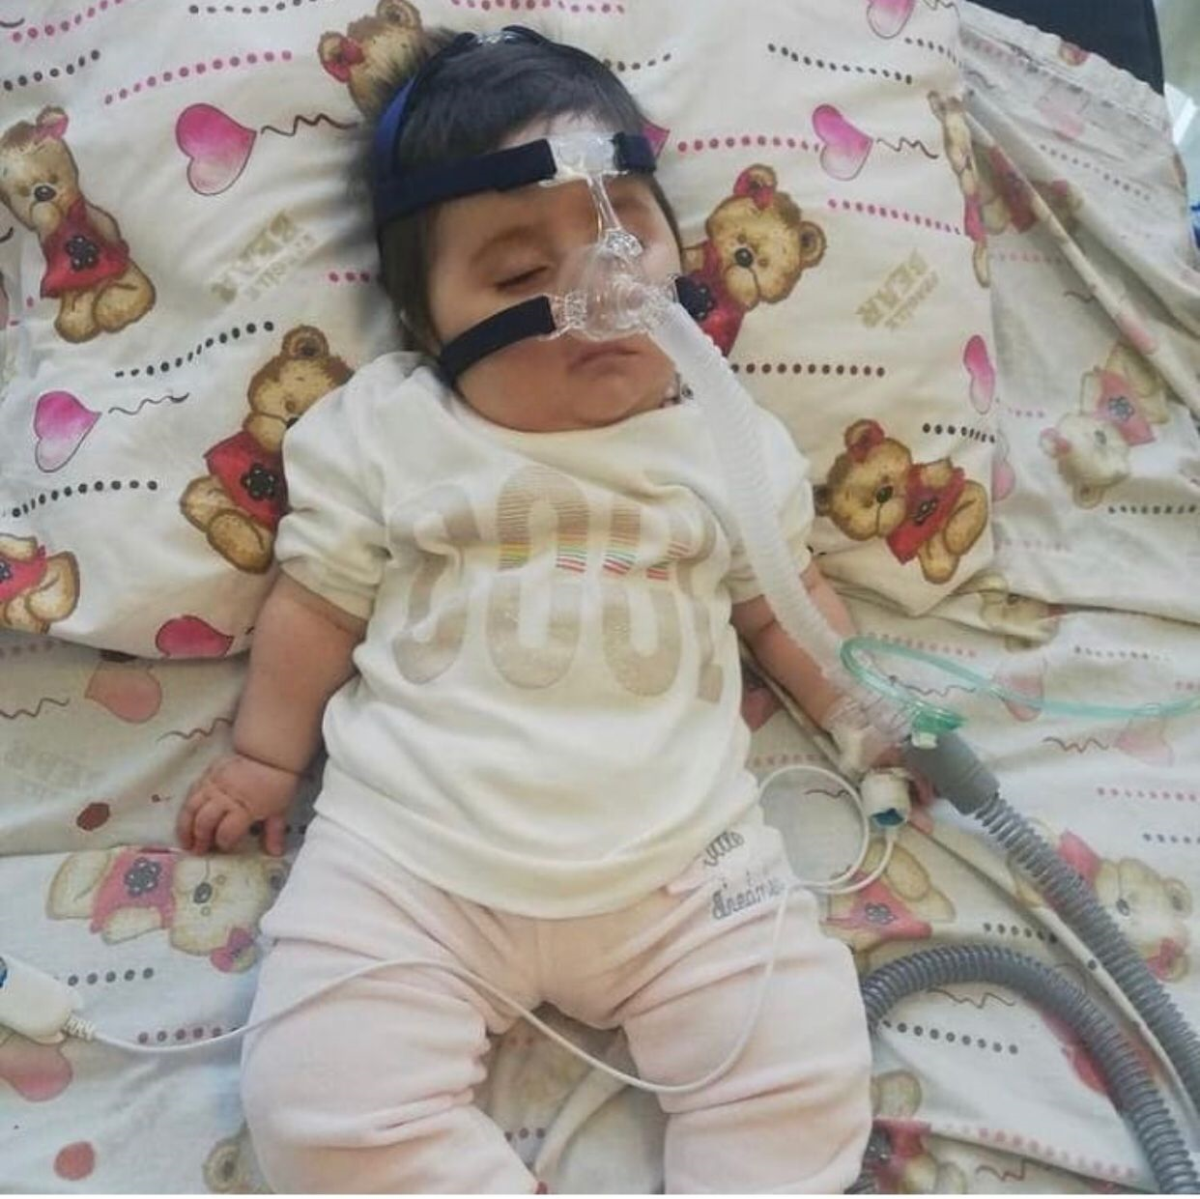 SMA hastası Sevinç Nur'un ailesi yardım bekliyor: Ölmesini istemiyoruz